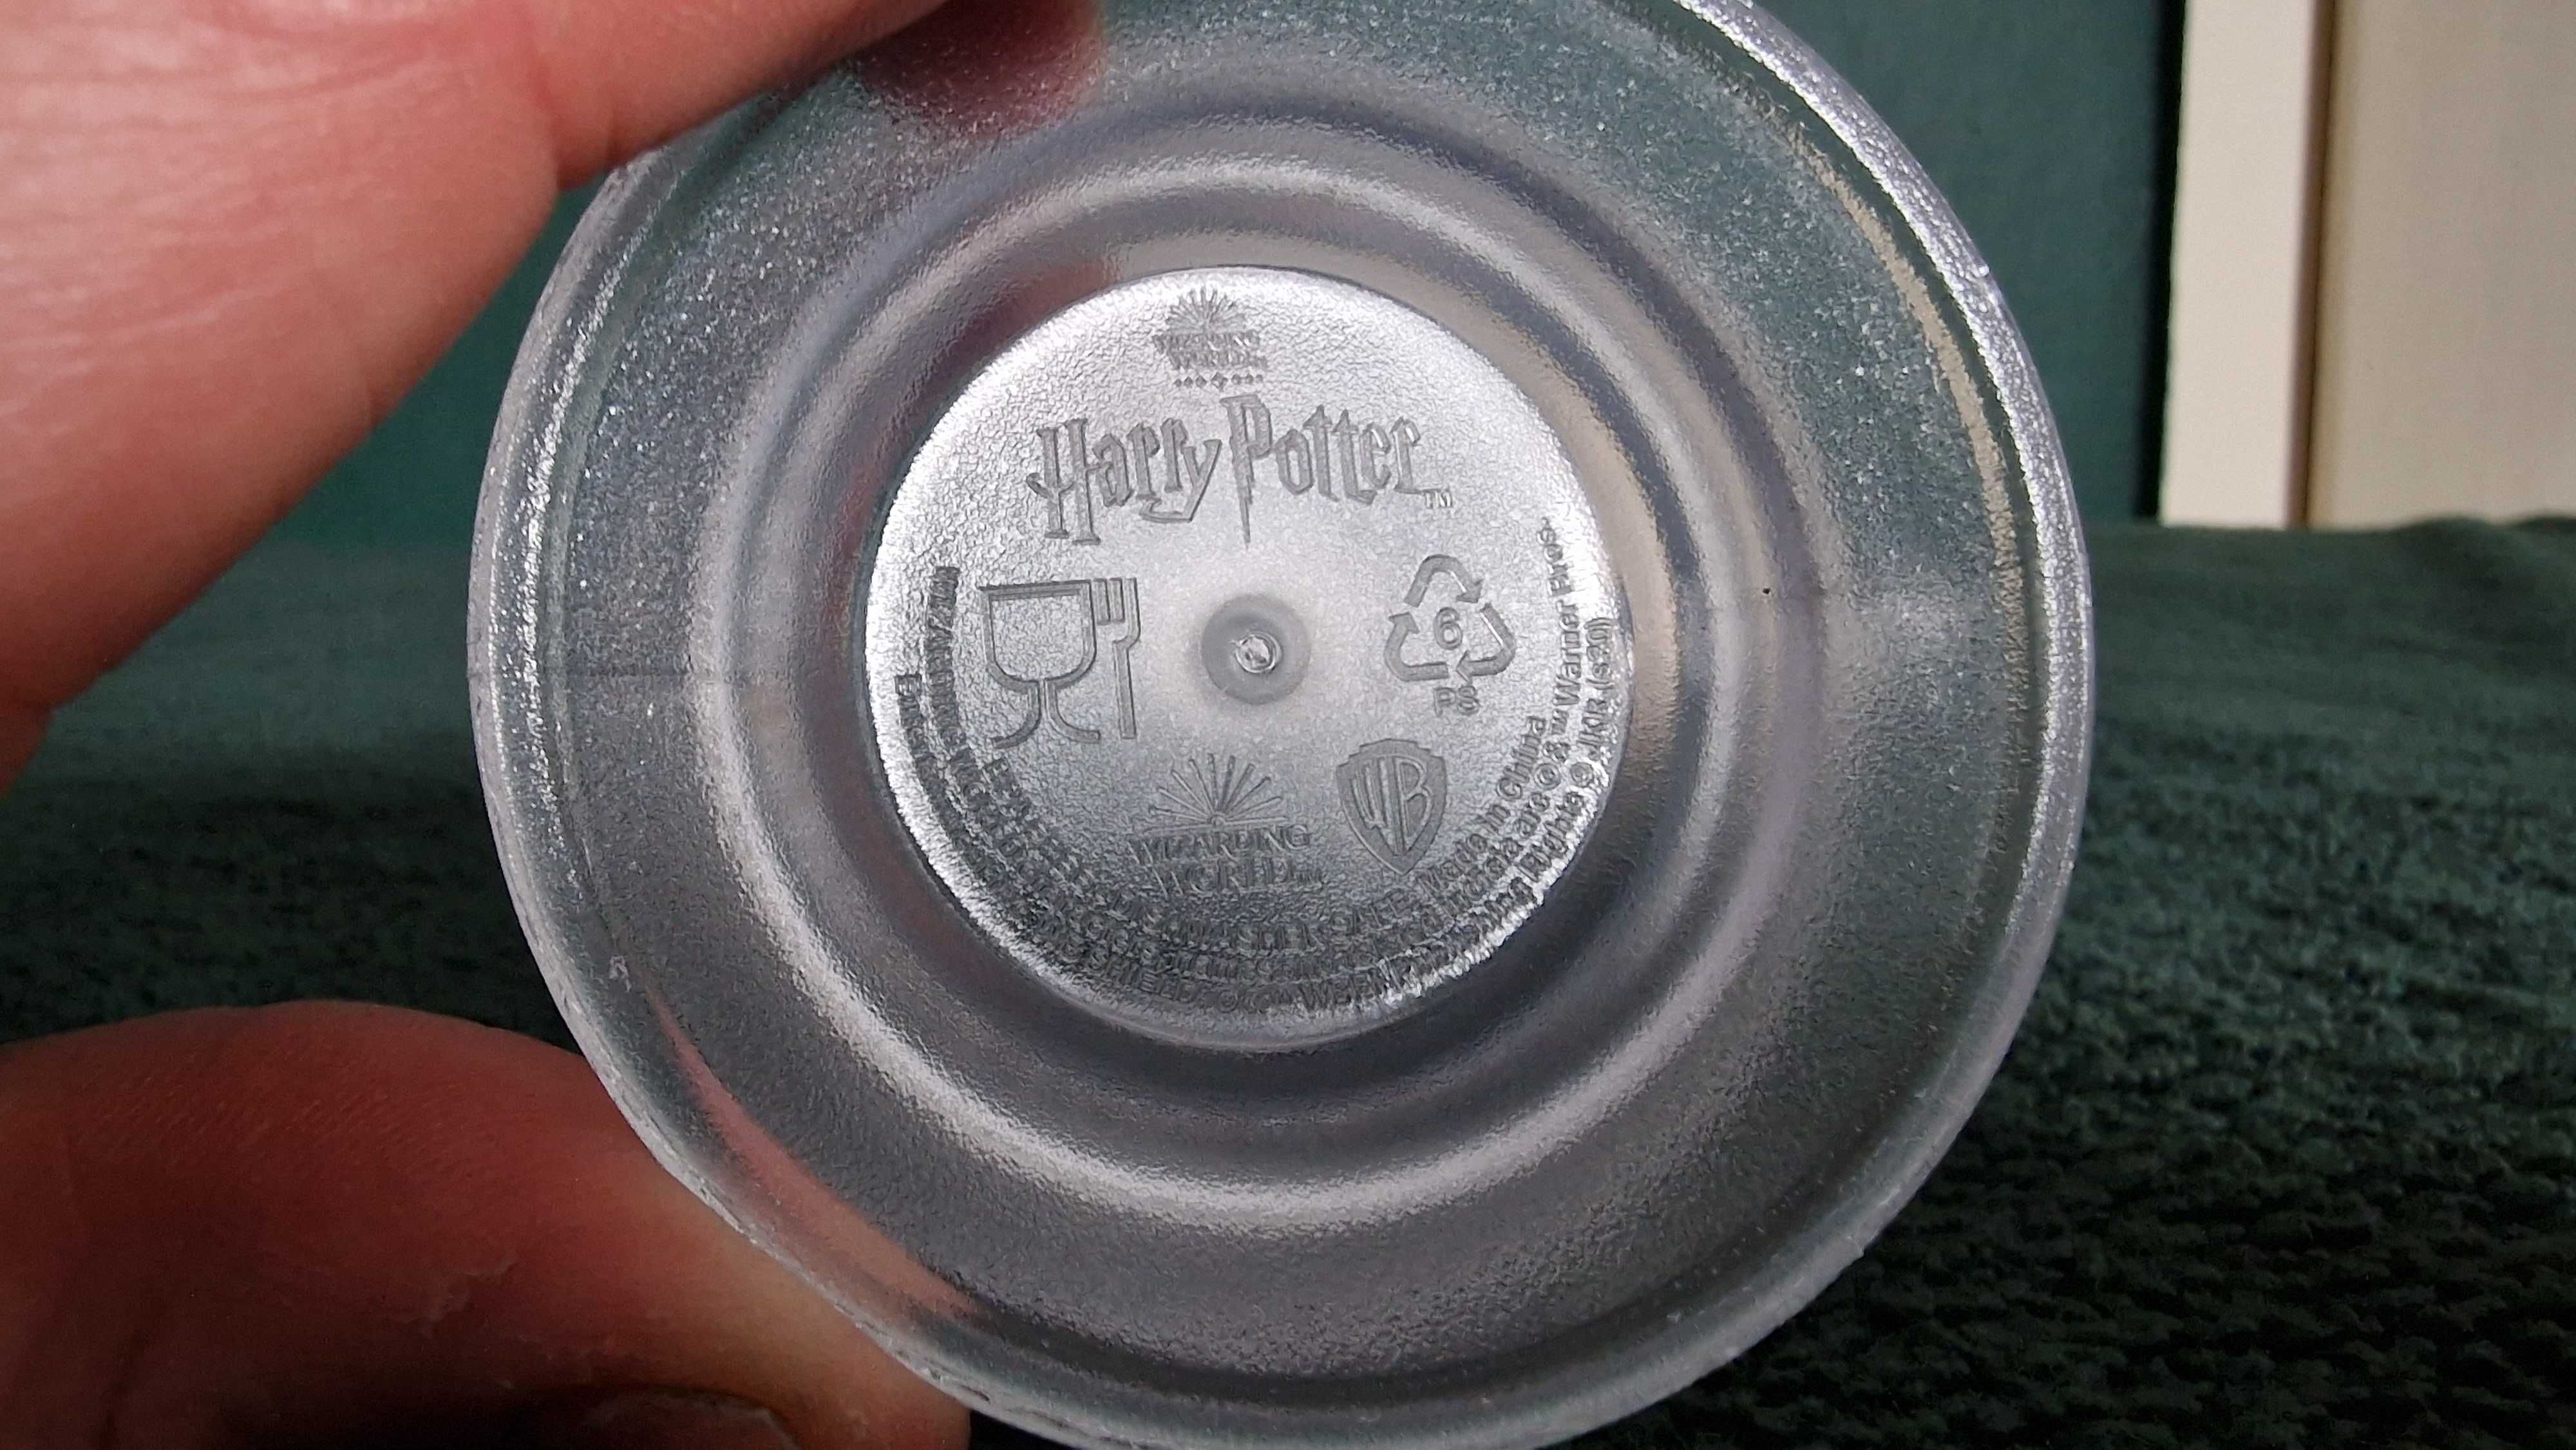 Harry Potter kubek Butterbeer